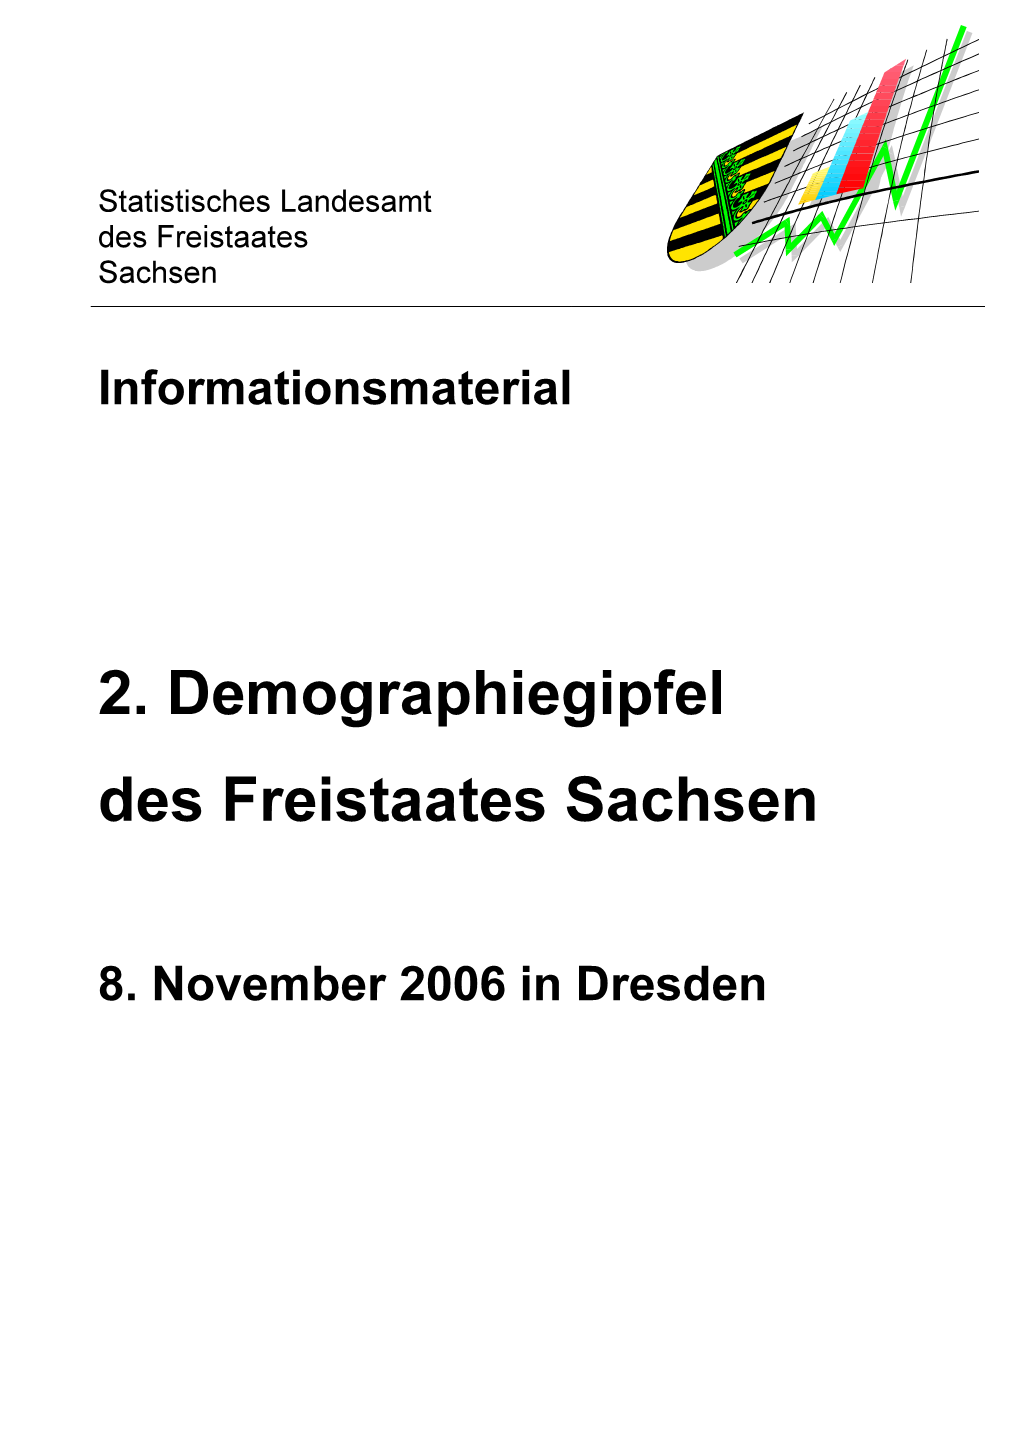 2. Demographiegipfel Des Freistaates Sachsen